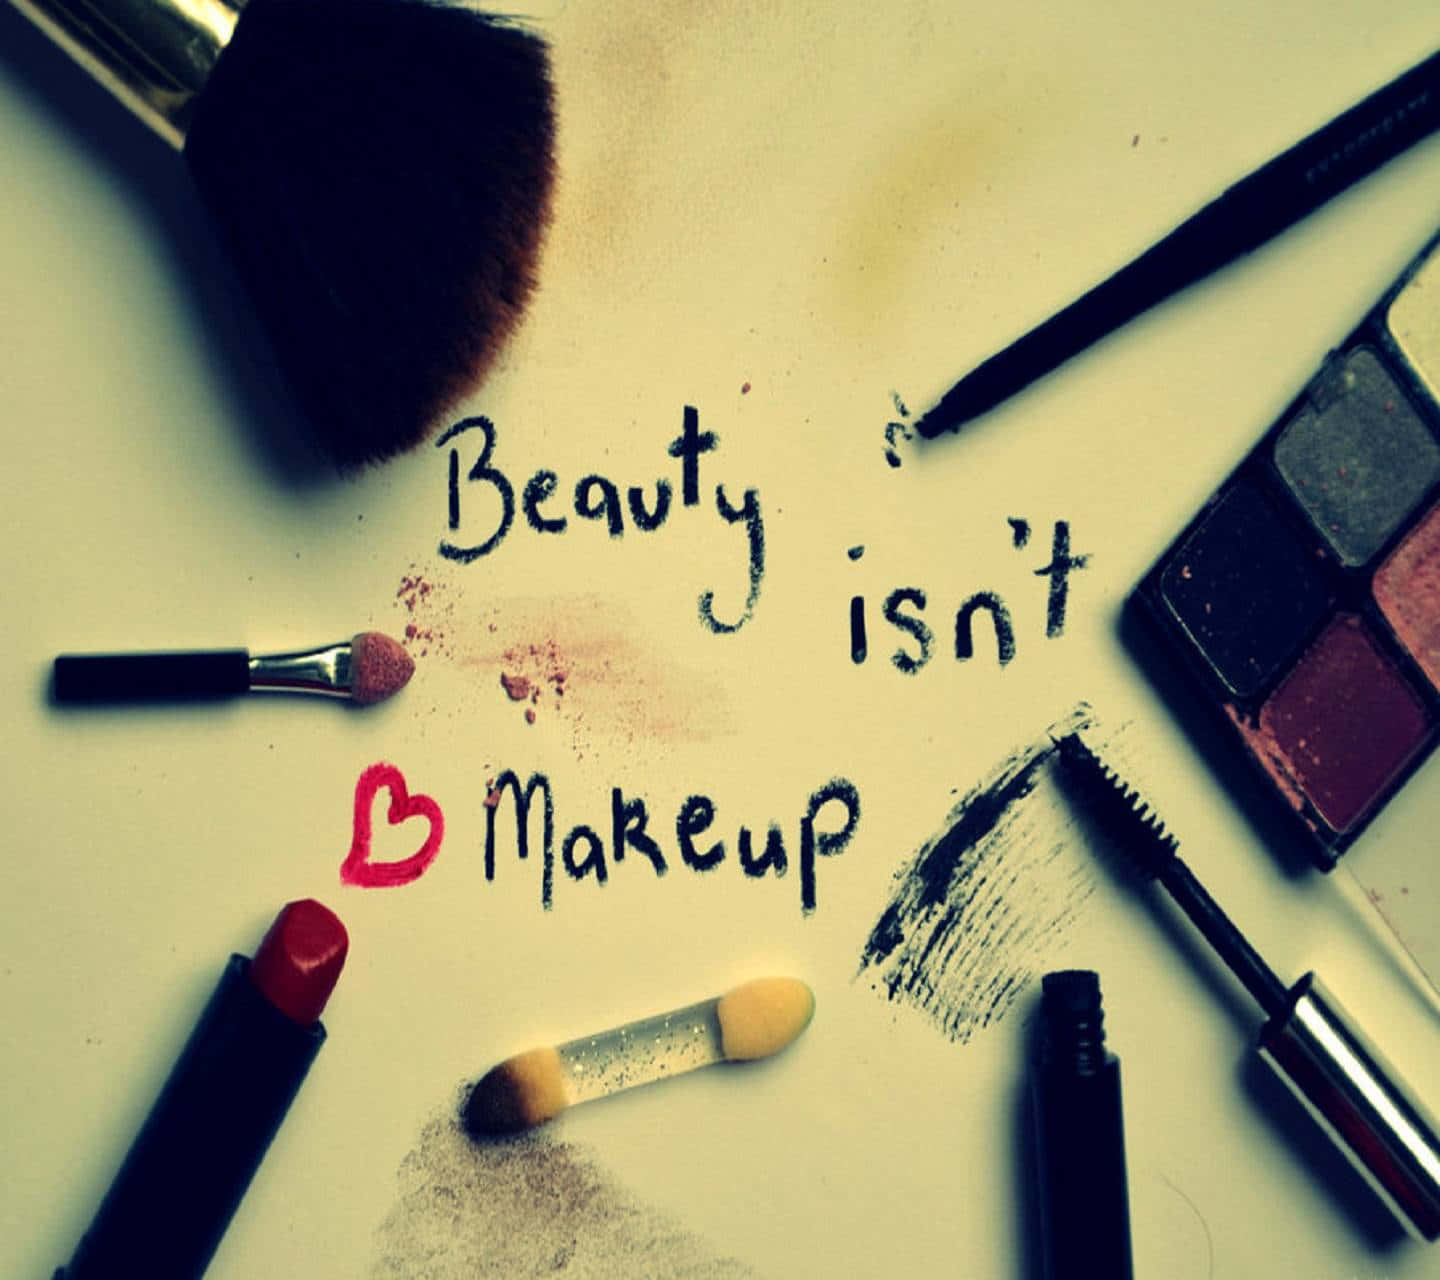 Udfolddin Kreativitet Med Makeup!